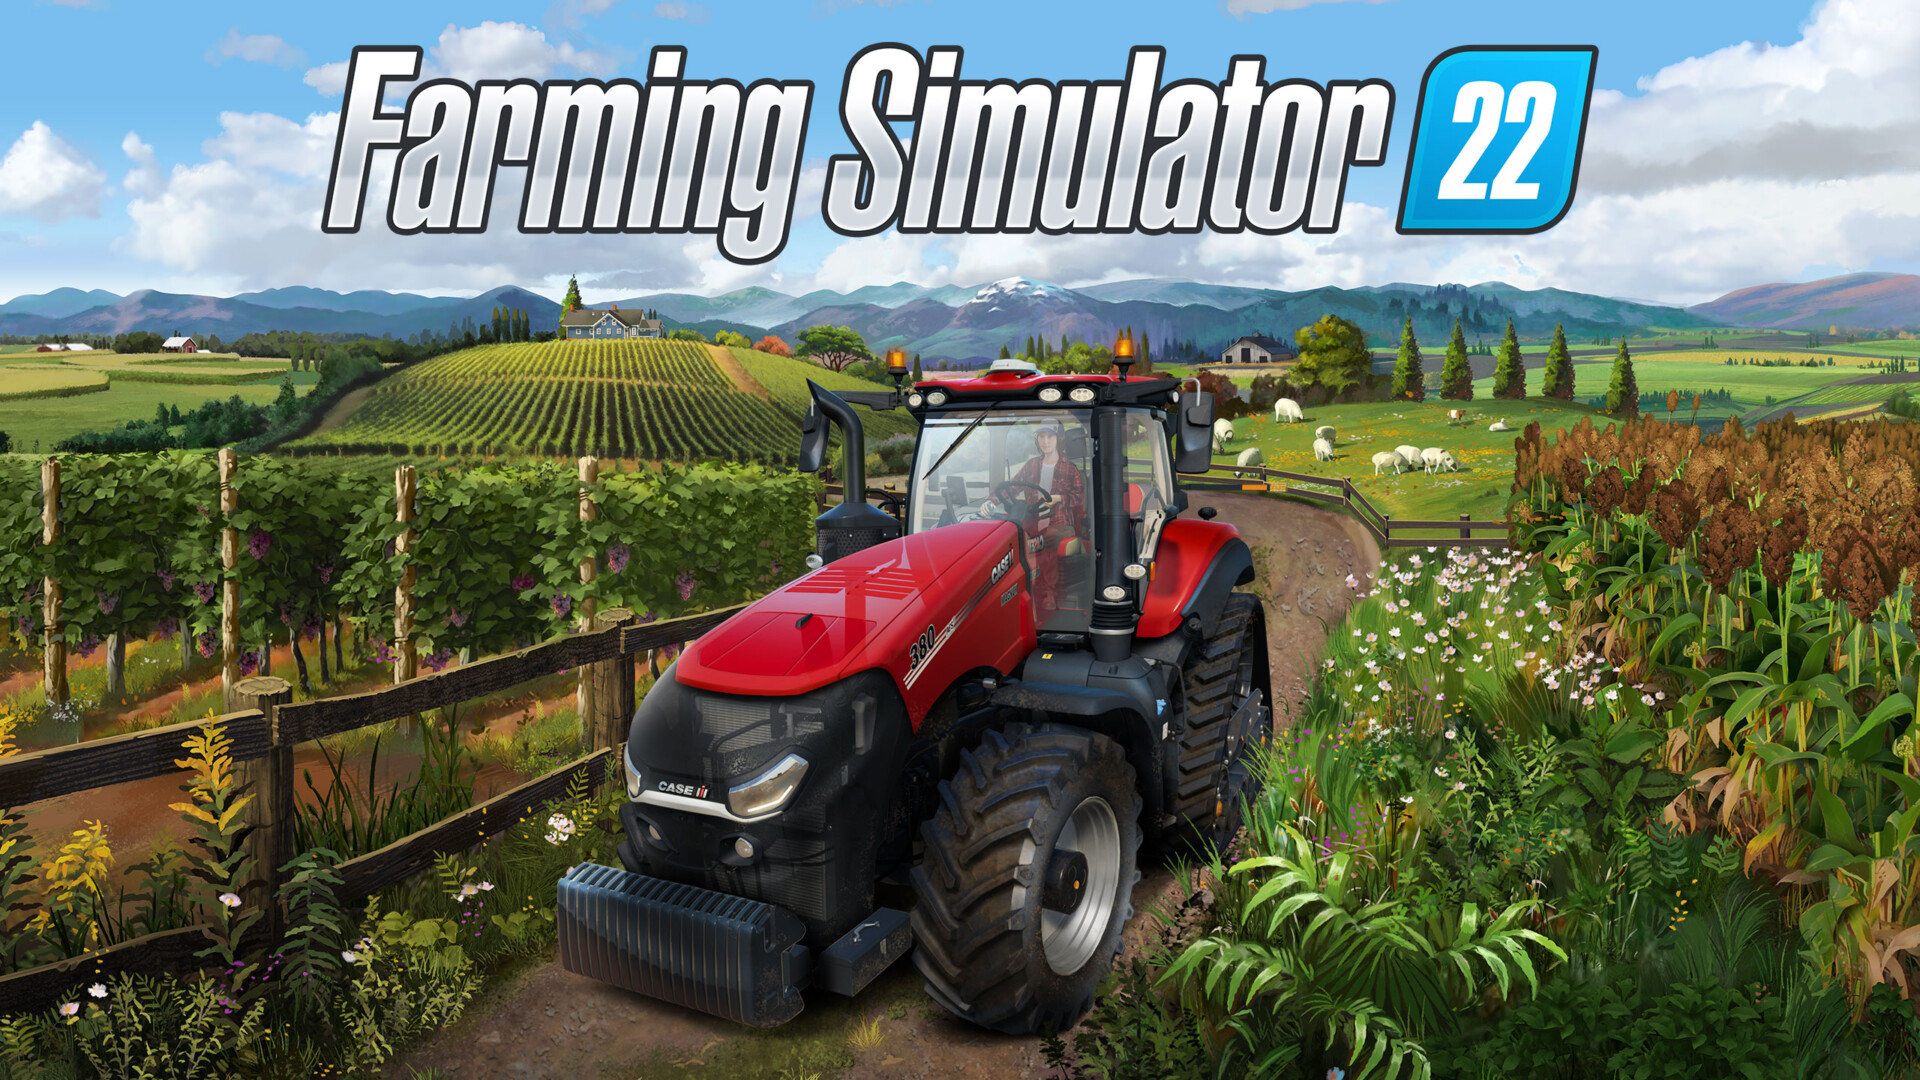 Farming Simulator 2022 Mencatat Lebih Banyak Pengguna Di Steam Daripada Battlefield 2042 Pada Bulan November